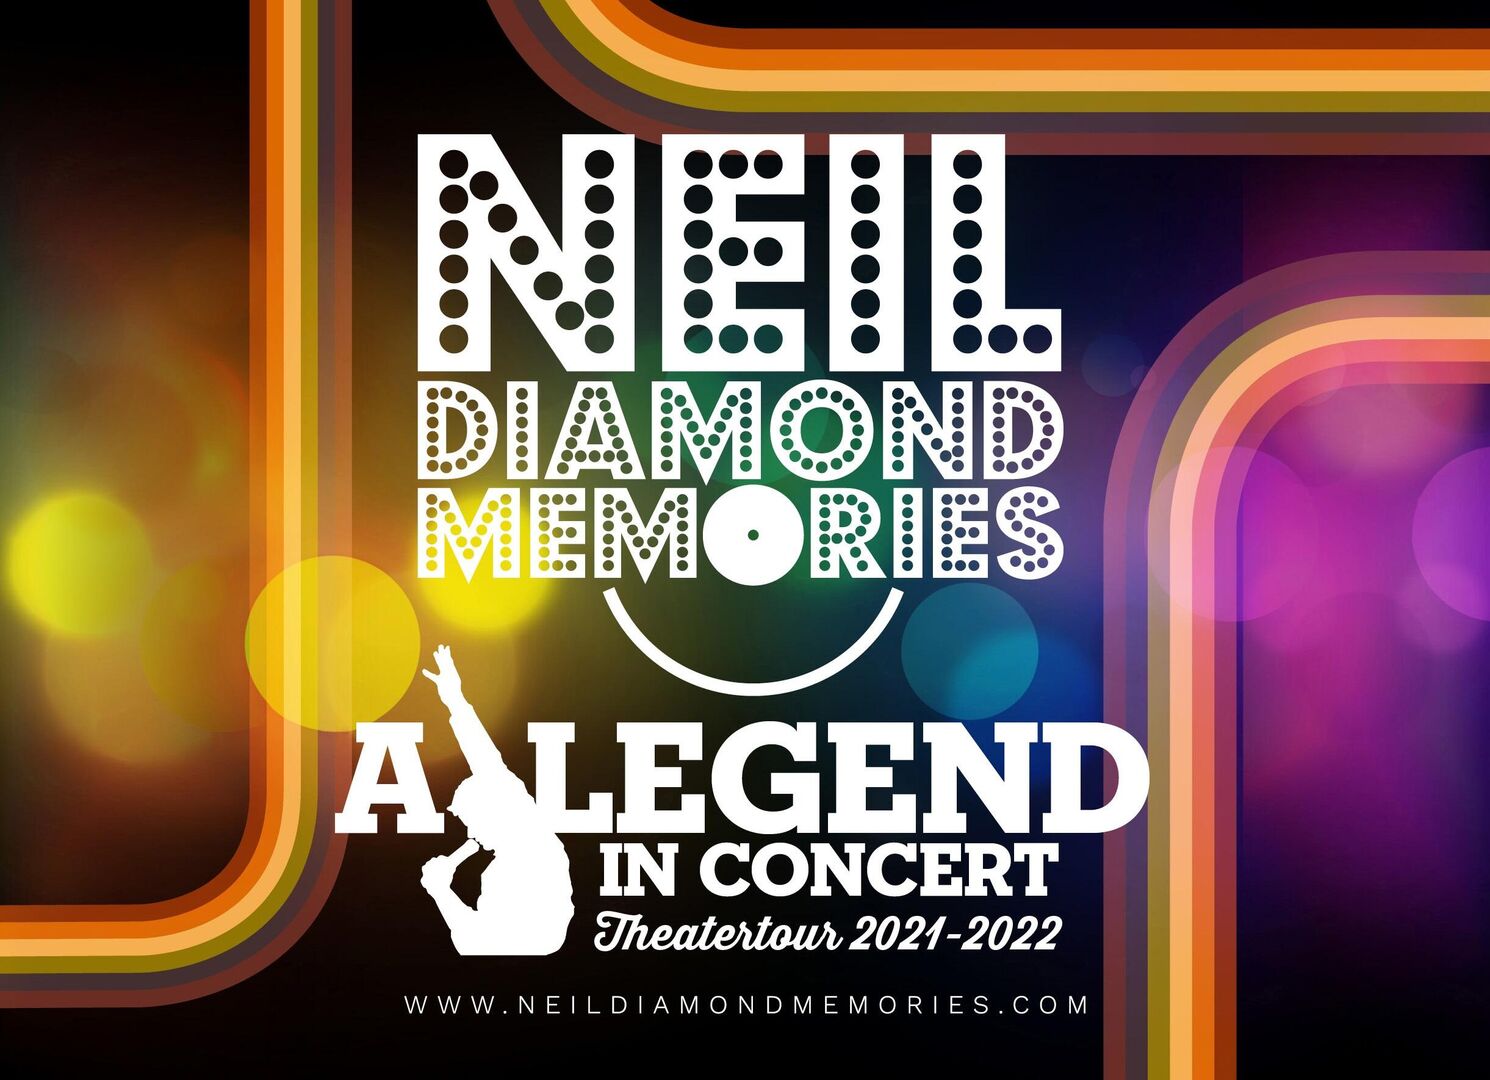 Neil Diamond Memories